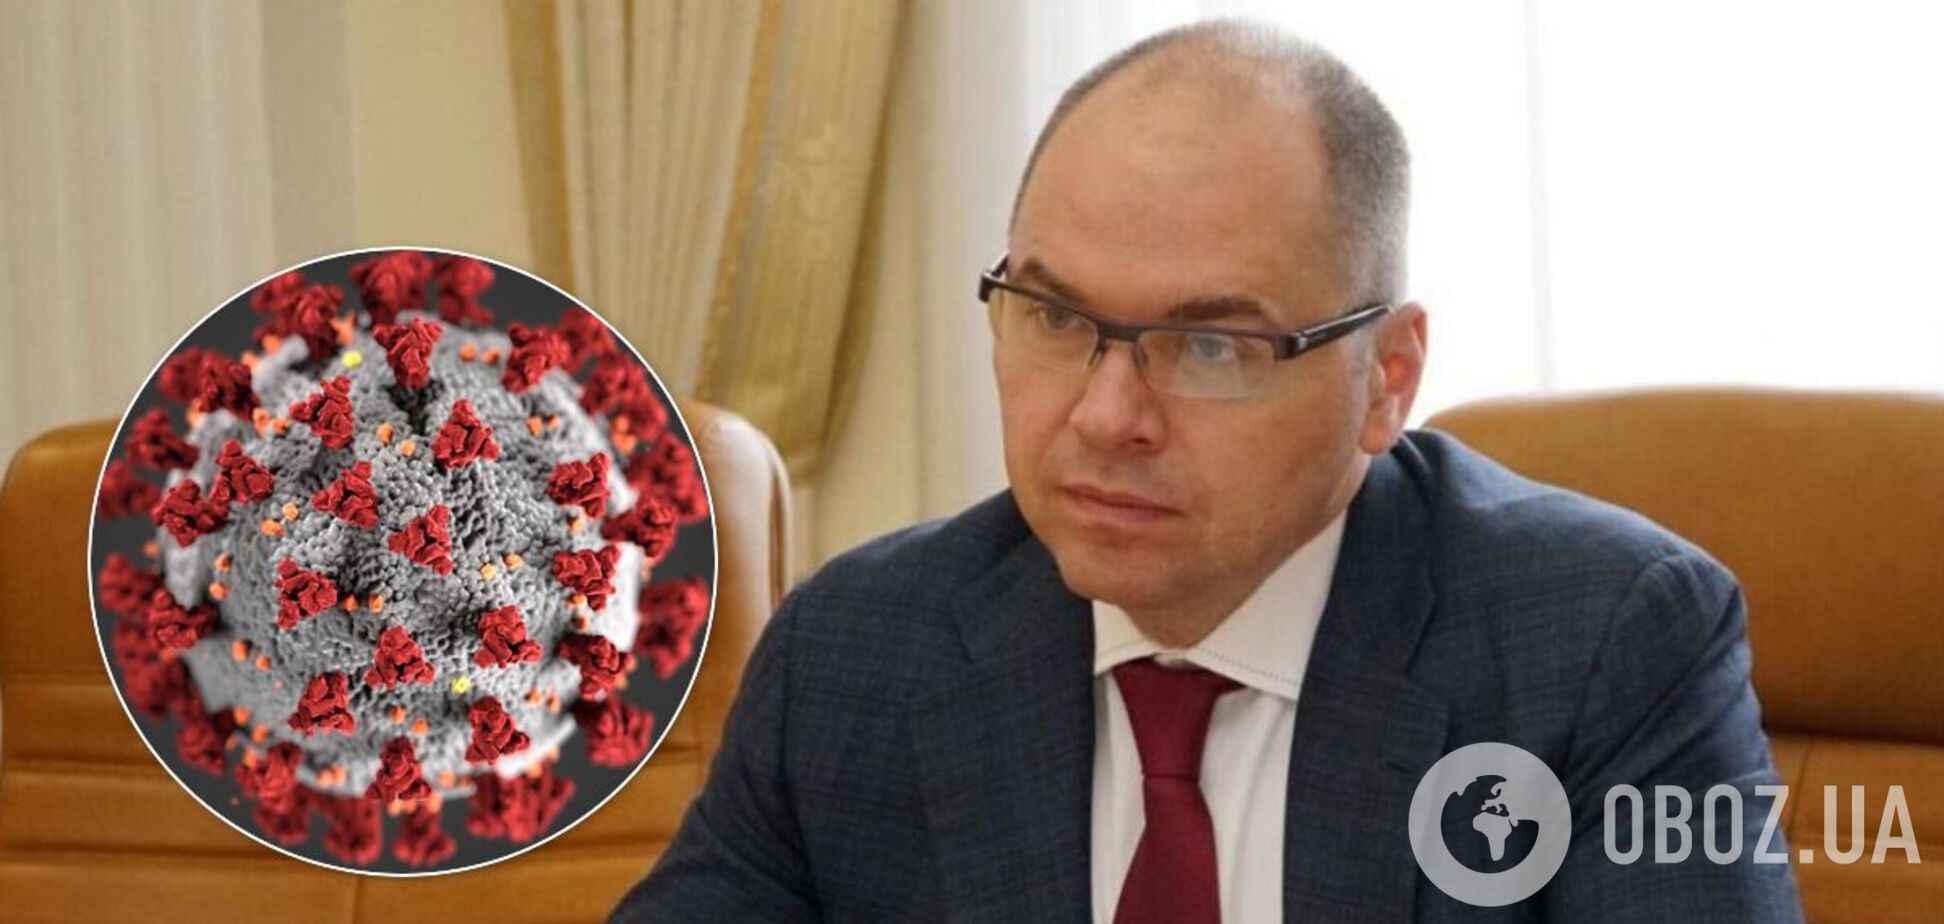 Степанов рассказал, как лечится от коронавируса